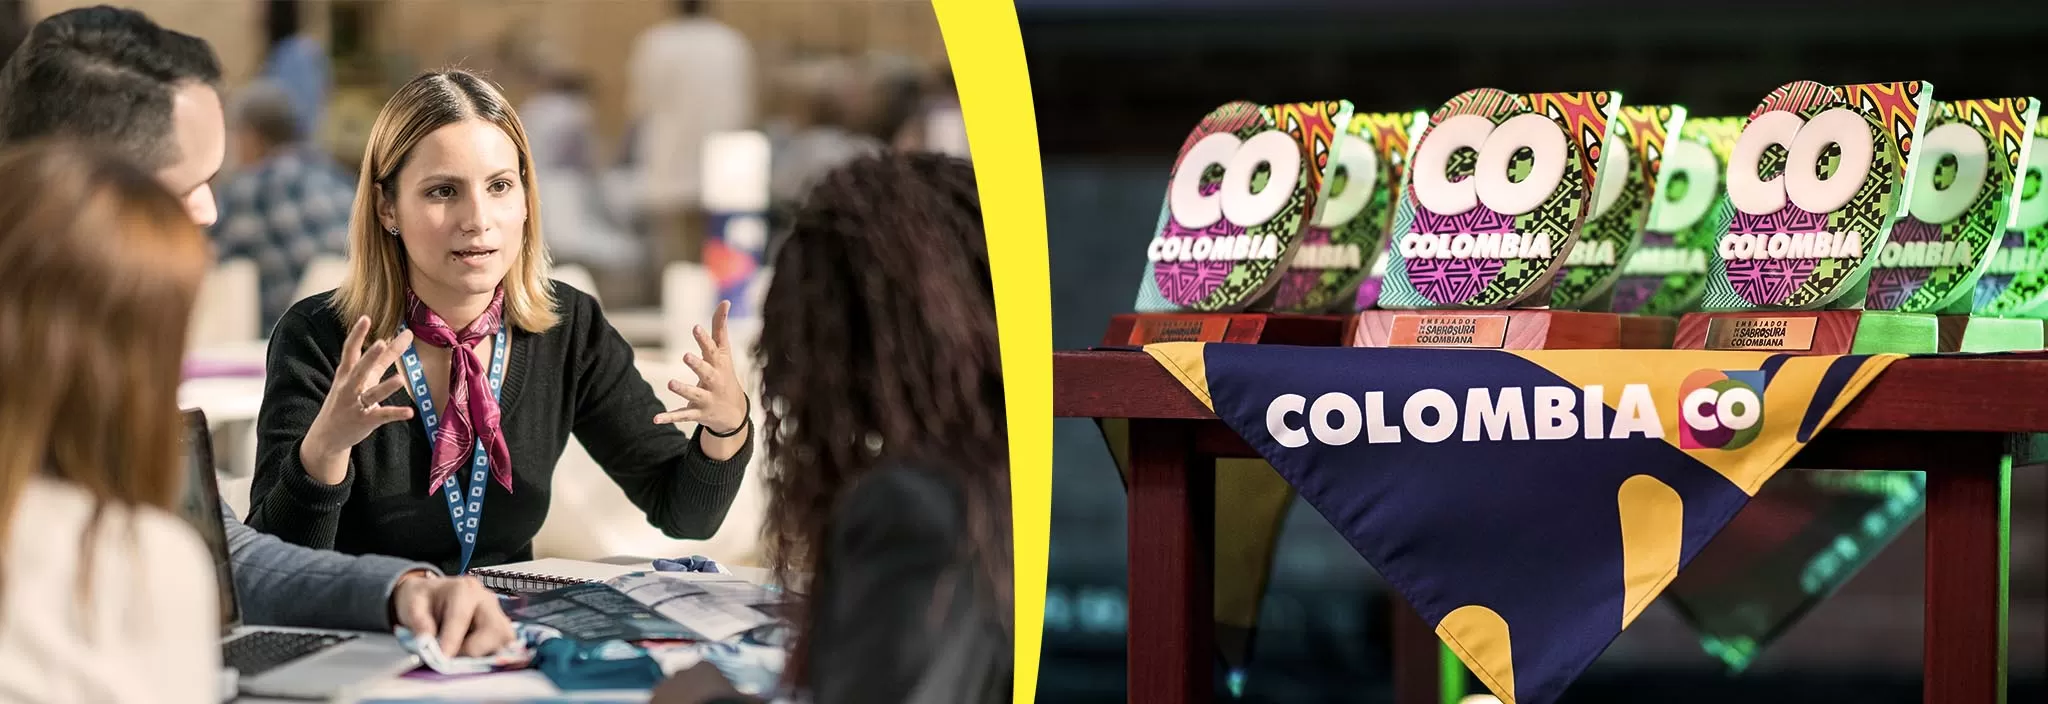 Dos imágenes en un banner, en la izquierda una mujer exponiendo y en la derecha los premios de Colombia Co